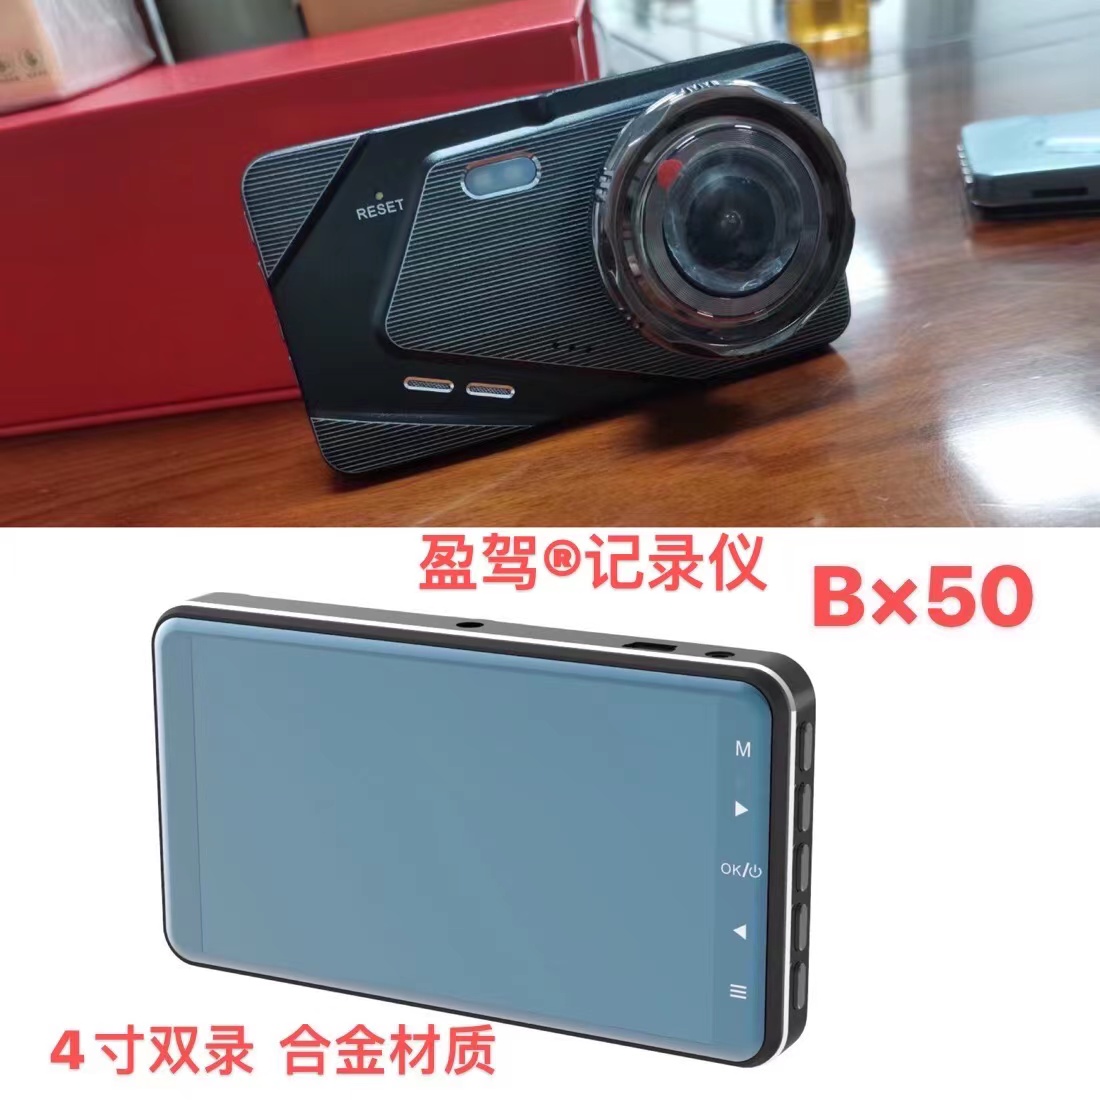 Kamera machin --YJ mak --nouvo pwodwi - BX50 prezante